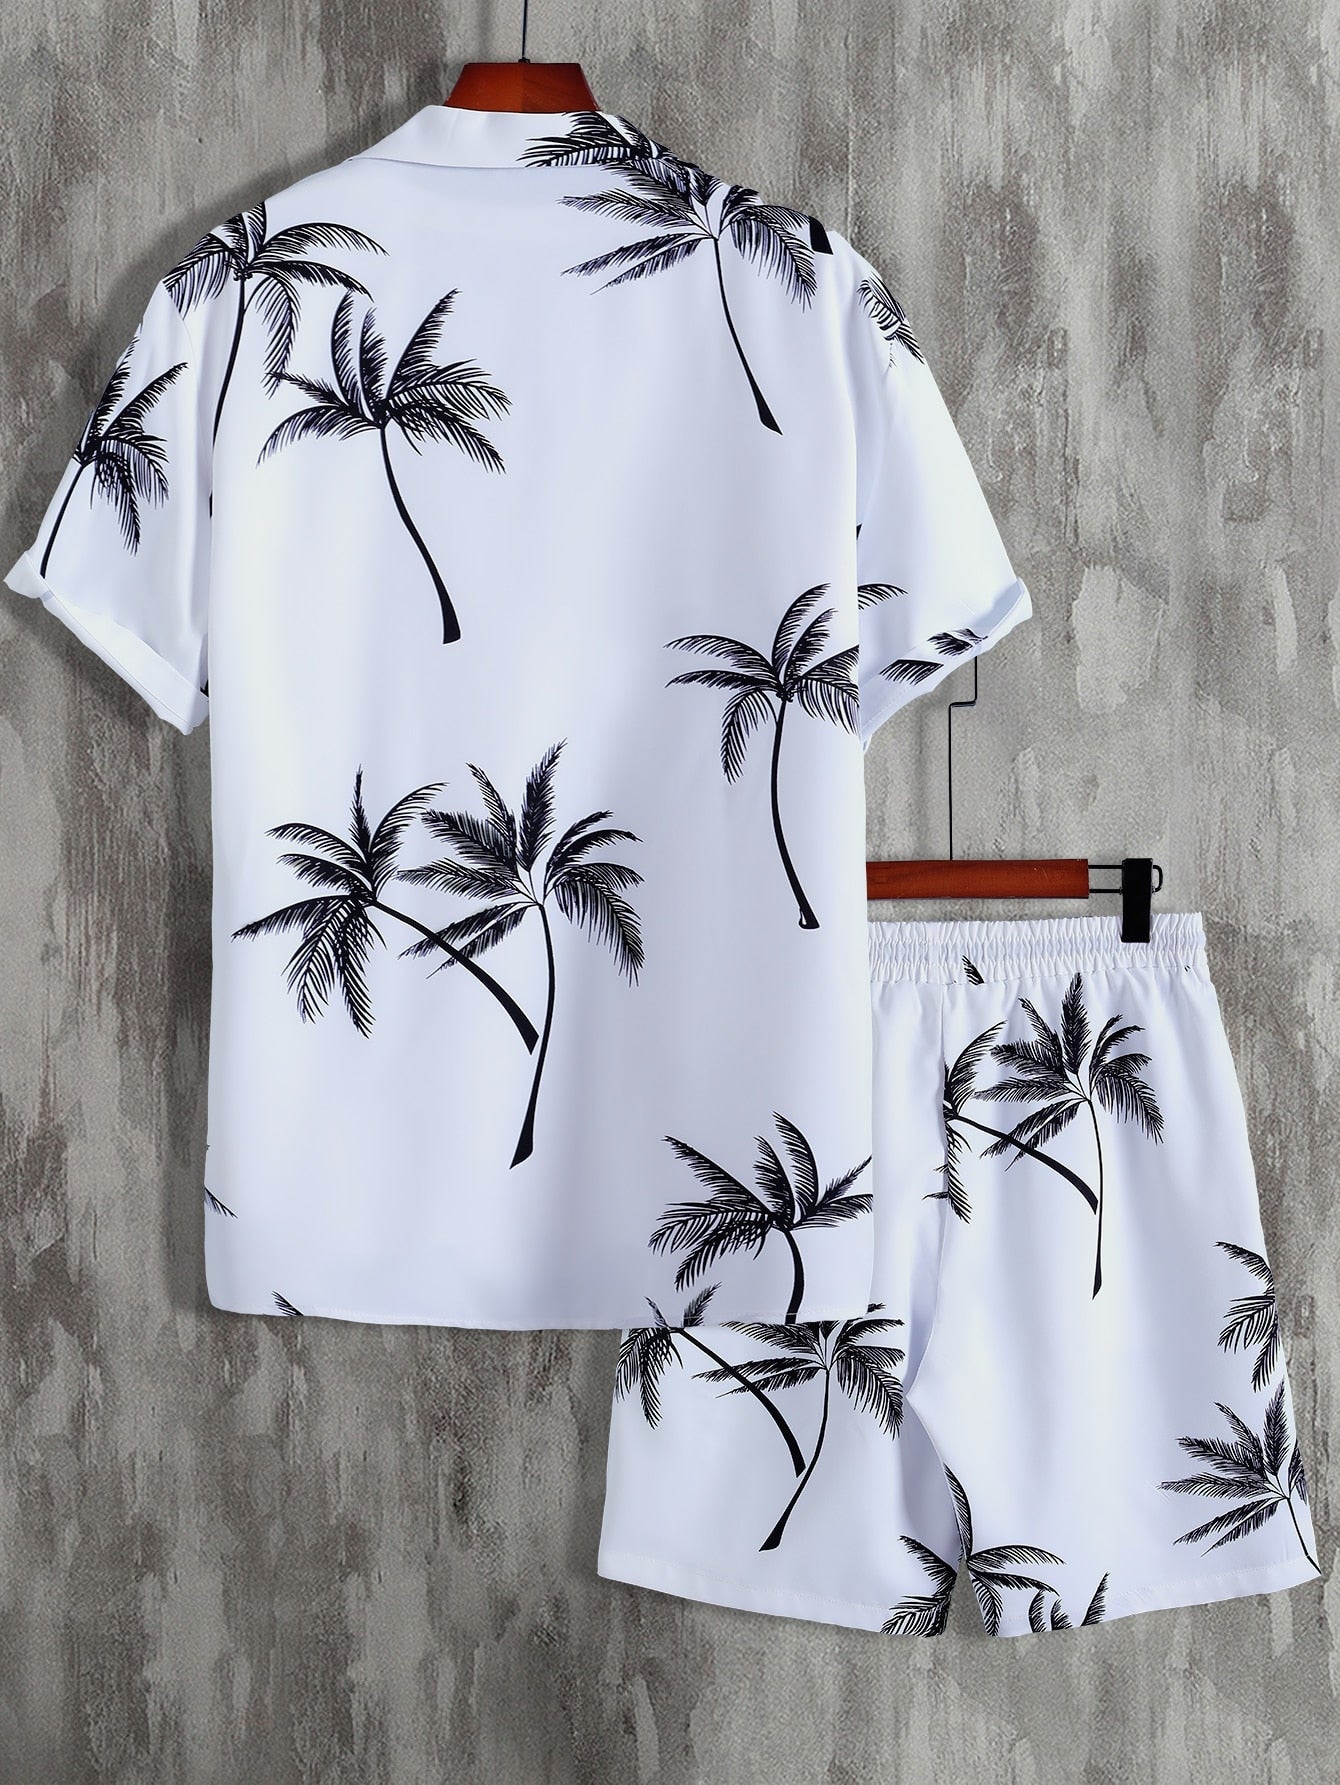 Random Palm Tree Print Shirt